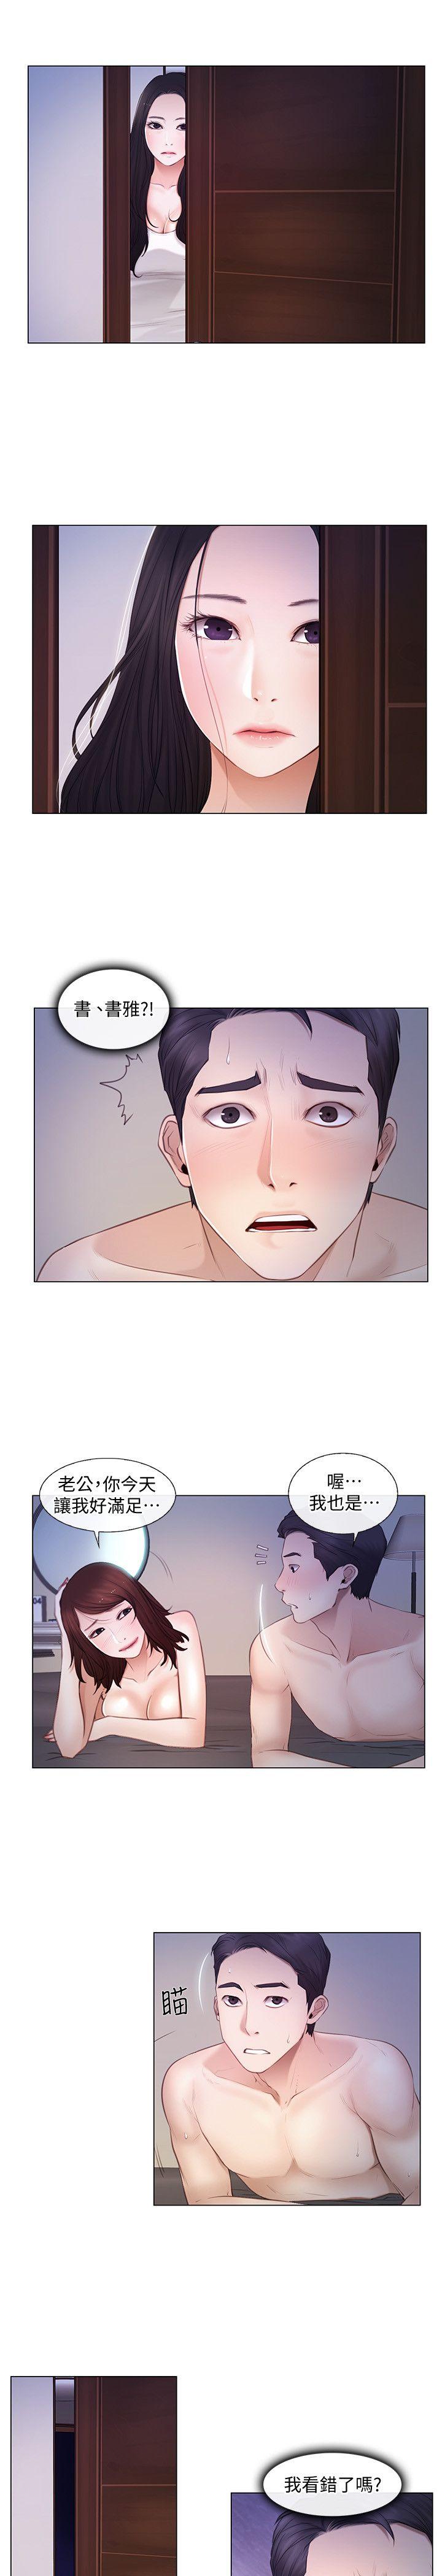 韩国污漫画 人夫的悸動 第6话-没穿内裤和自慰 9